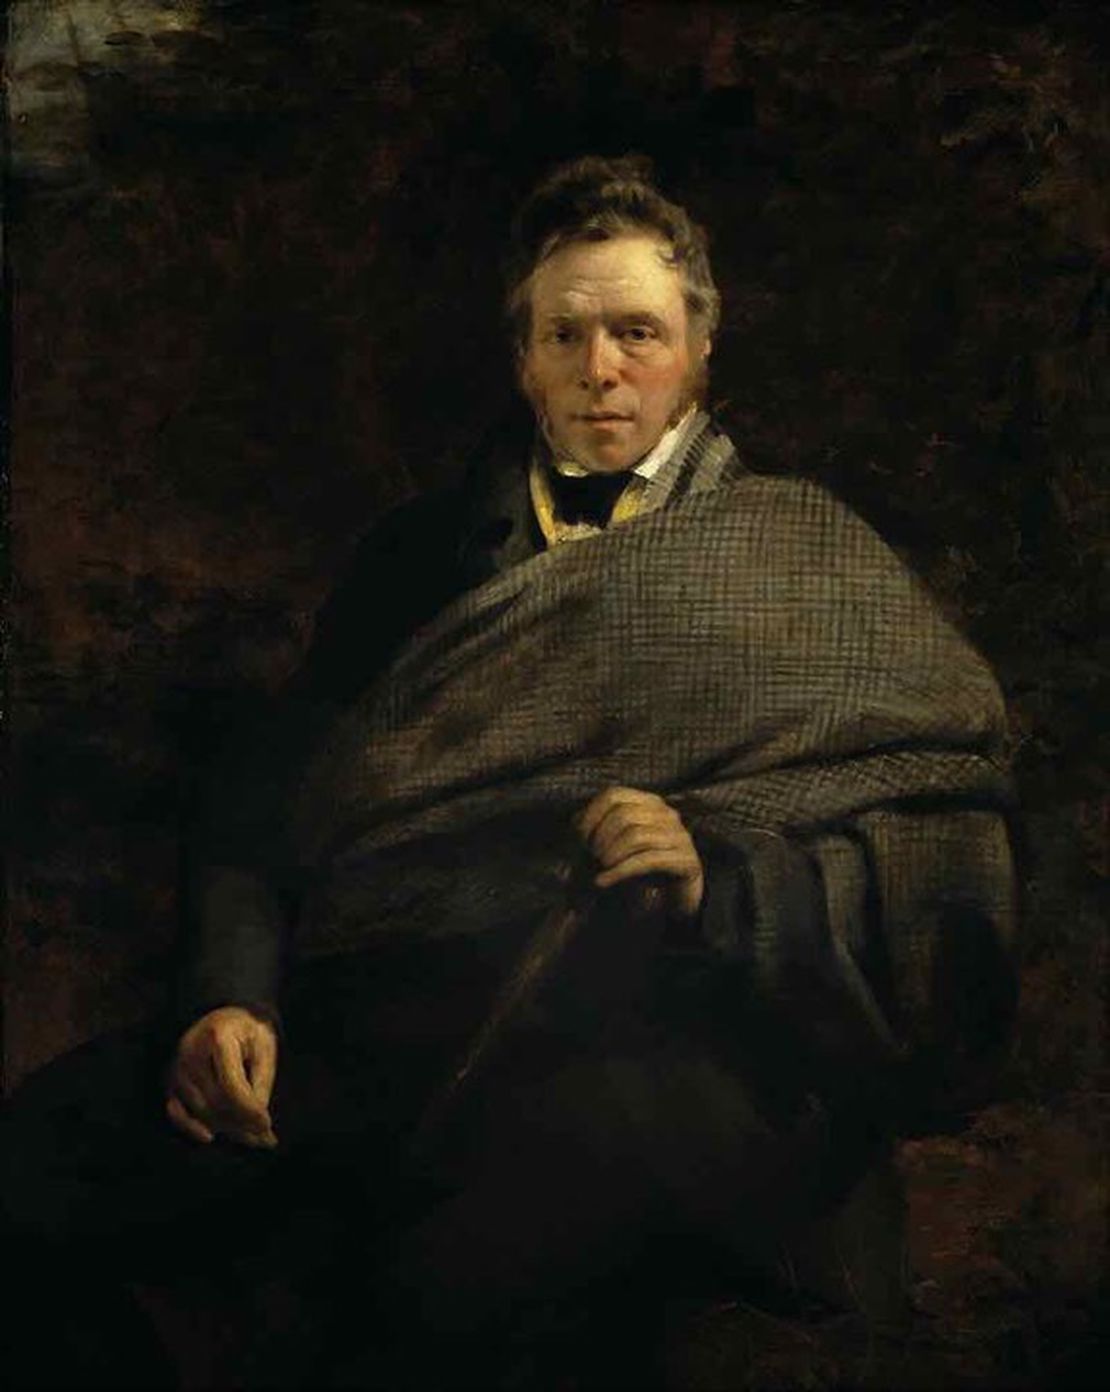 James Hogg, poet, died in Ettrick